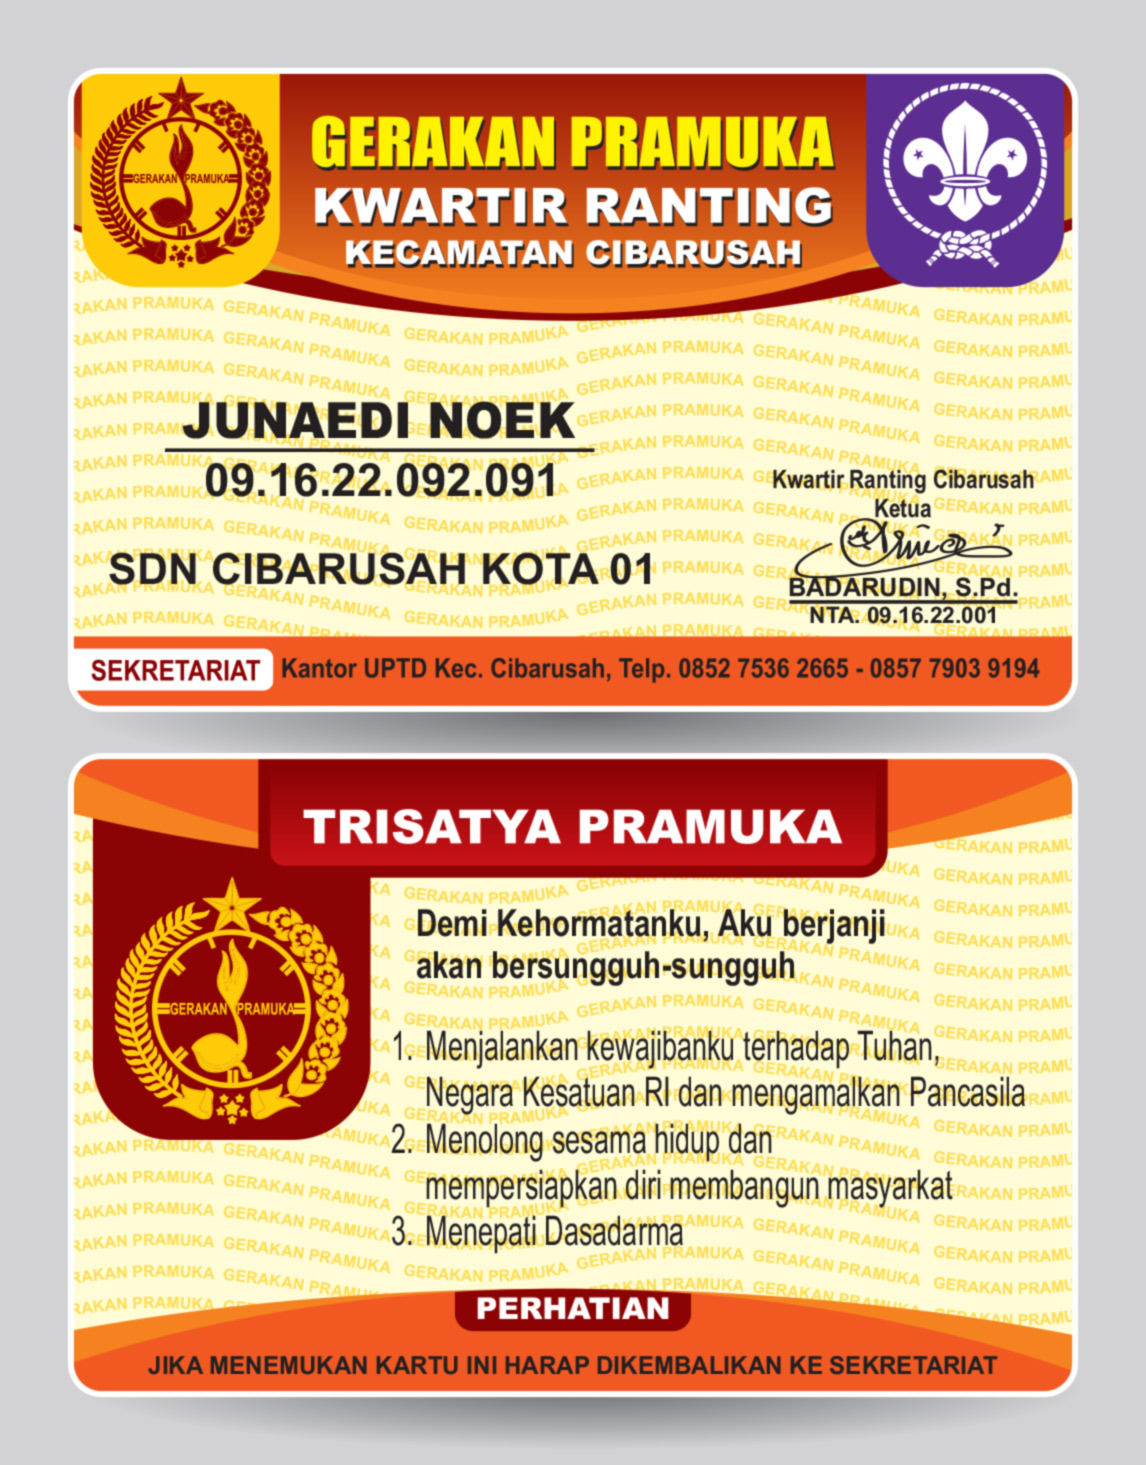 Contoh Desain  ID CARD  Pramuka  Cibarusah contoh desain  grafis